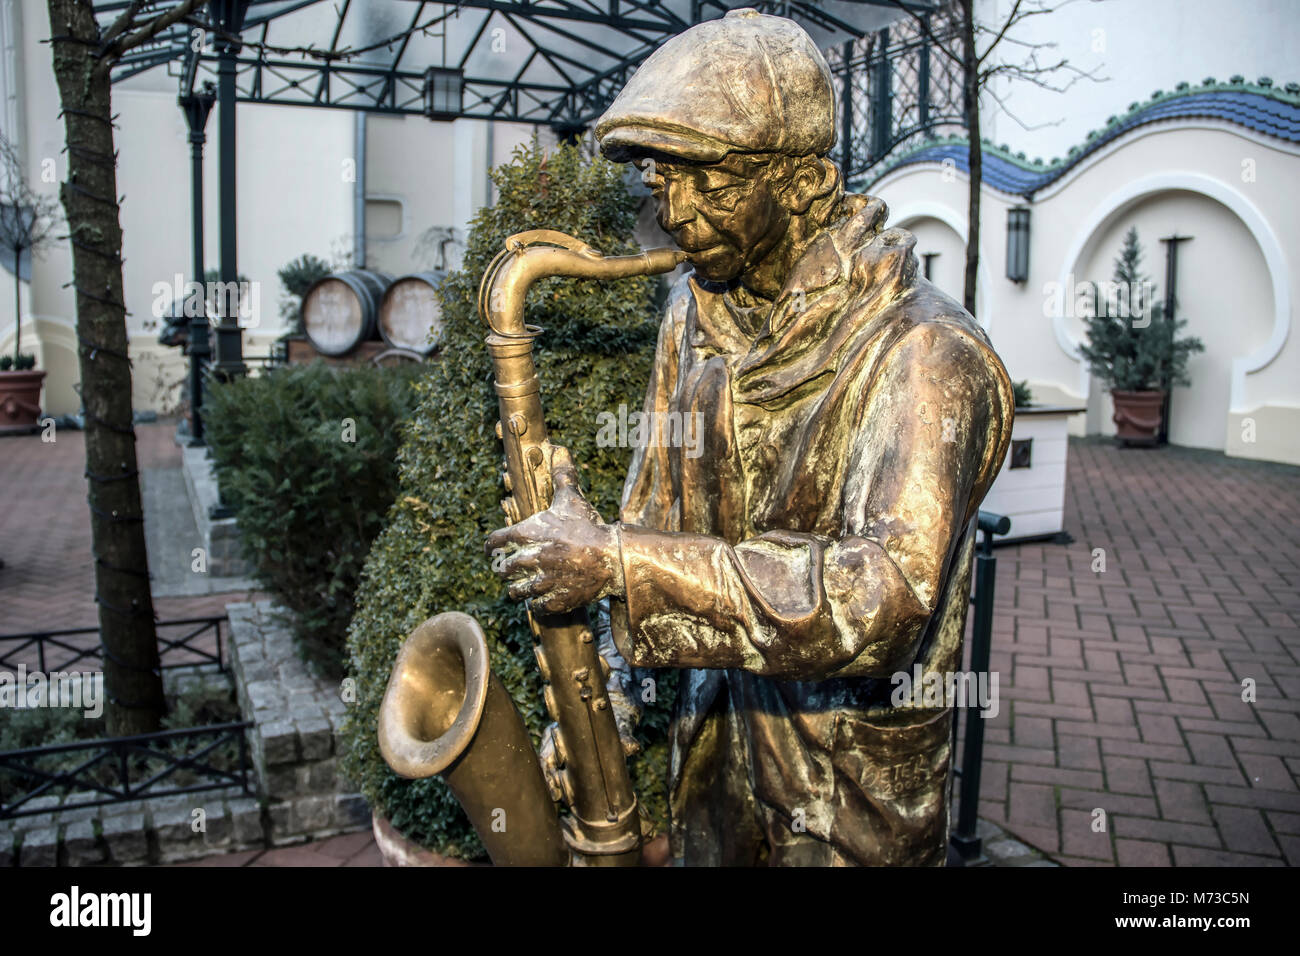 Subotica, en Voïvodine, Serbie - sculpture en bronze d'un homme à jouer du saxophone Banque D'Images